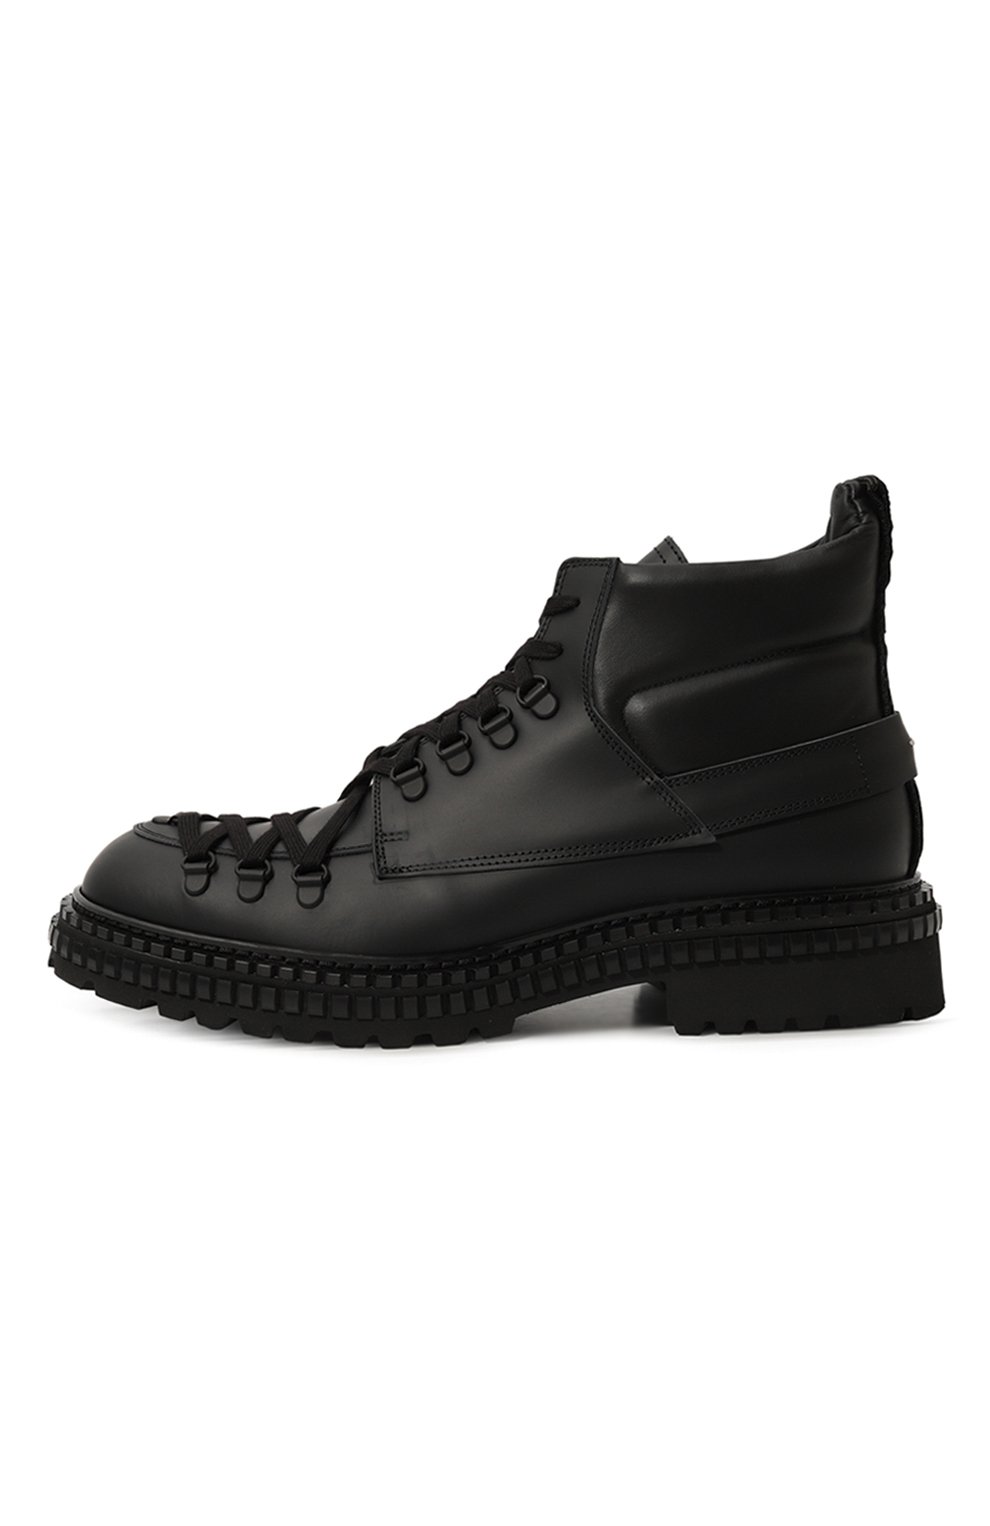 Мужские черные кожаные ботинки willi THE-ANTIPODE купить винтернет-магазине ЦУМ, арт. WILLI 208V.